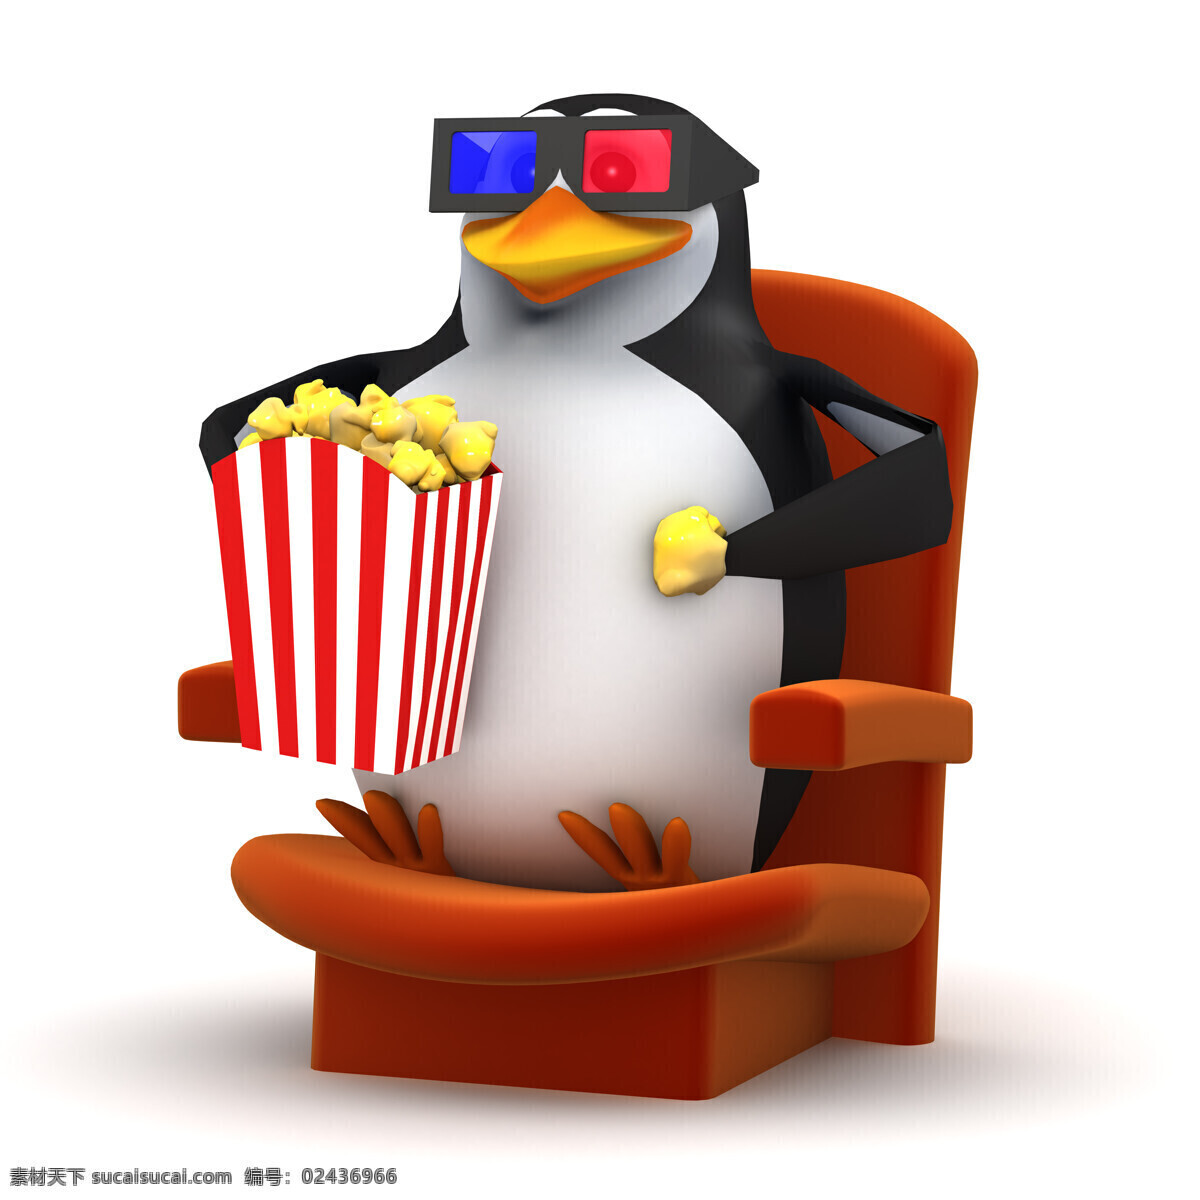 吃 爆米花 看电影 企鹅 看 3d 电影 卡通企鹅 影音娱乐 生活百科